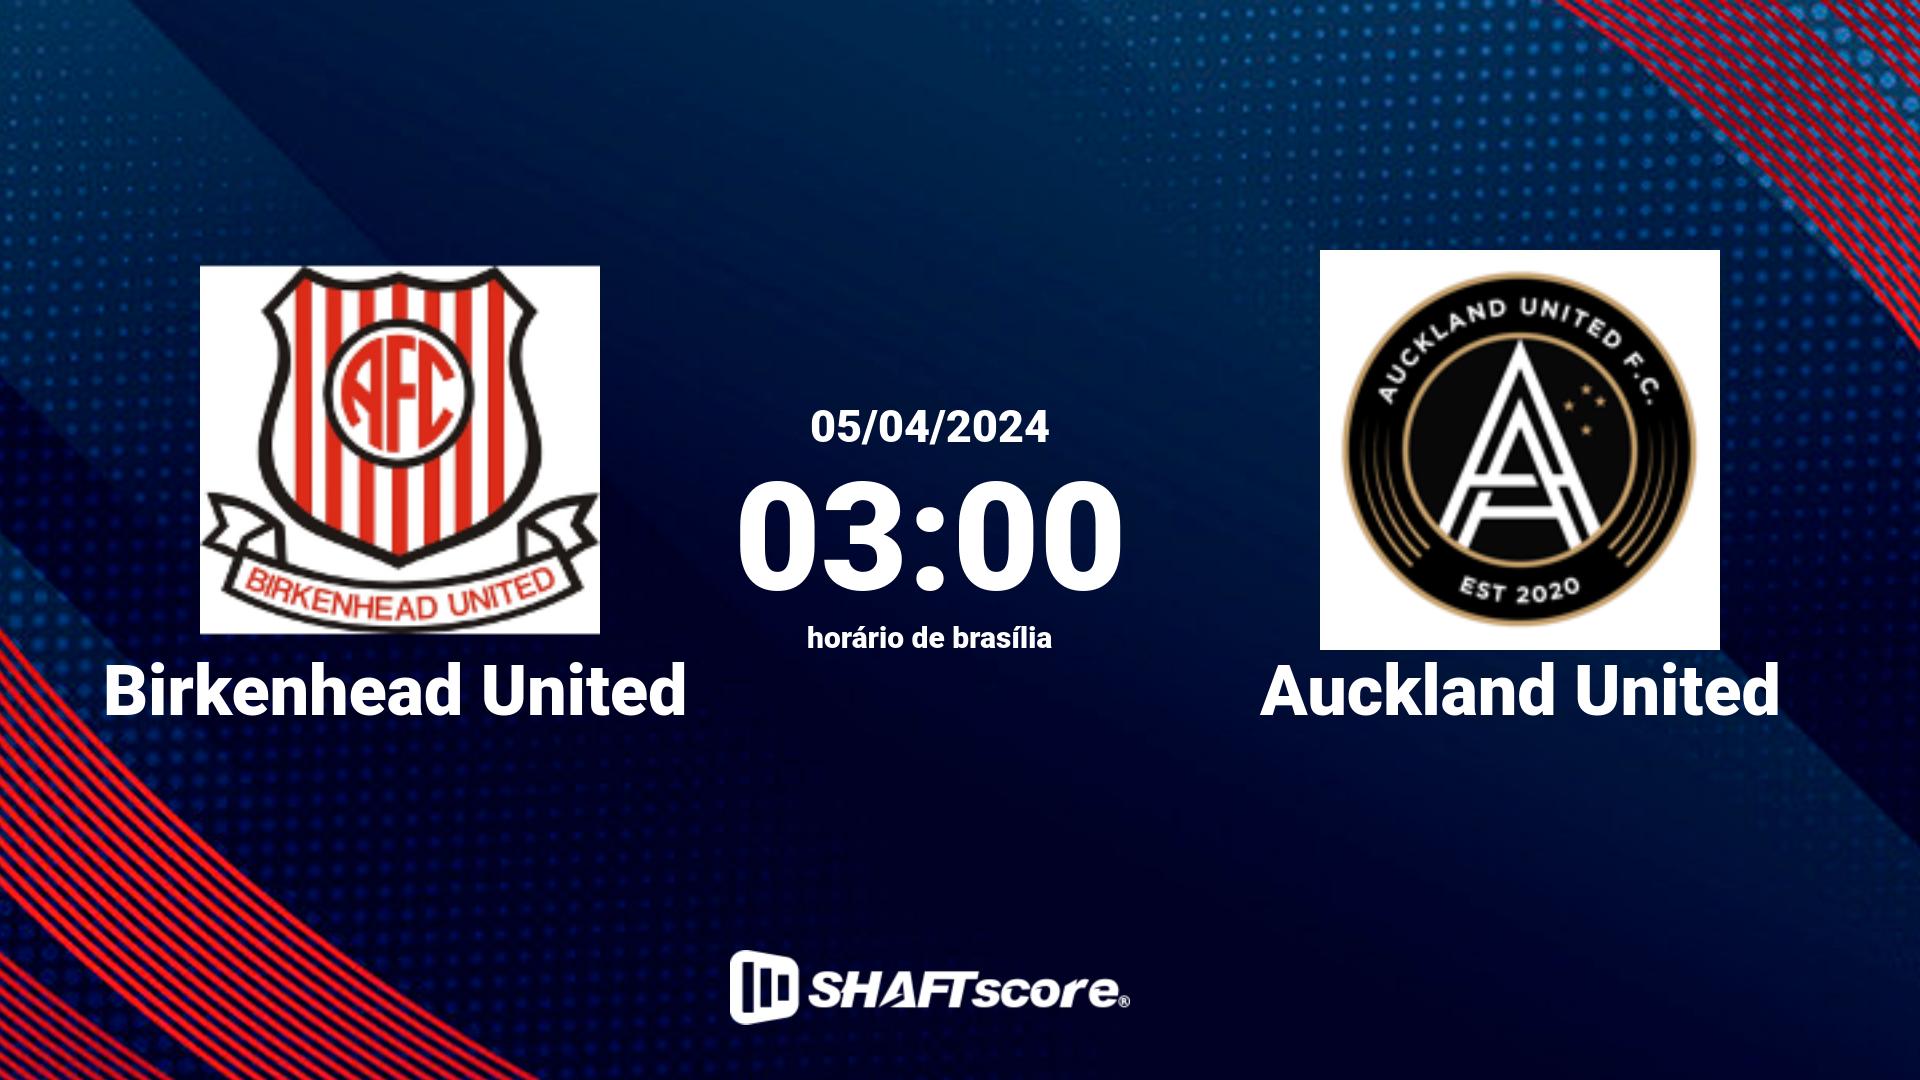 Estatísticas do jogo Birkenhead United vs Auckland United 05.04 03:00